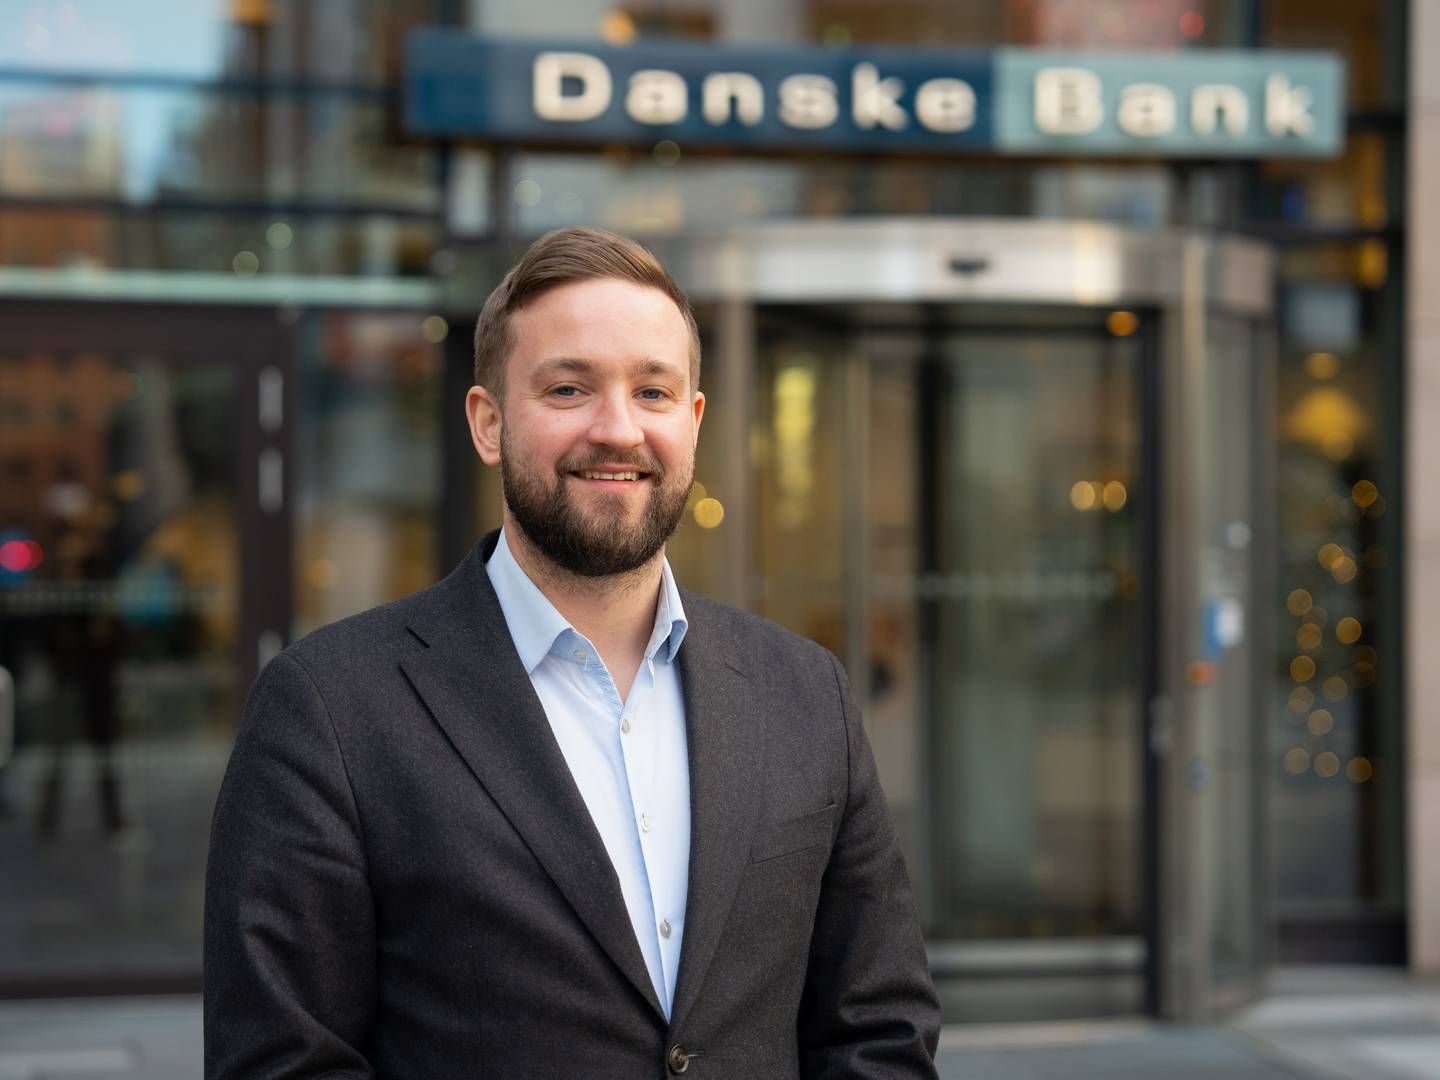 Flere investorer mener, at den nye klimaaftale er en god start på den grønne omstilling af shippingindustrien. ”Den giver et tydeligt signal," siger Daniel Brenden, bæredygtighedsekspert hos Danske Bank. | Foto: Danske Bank